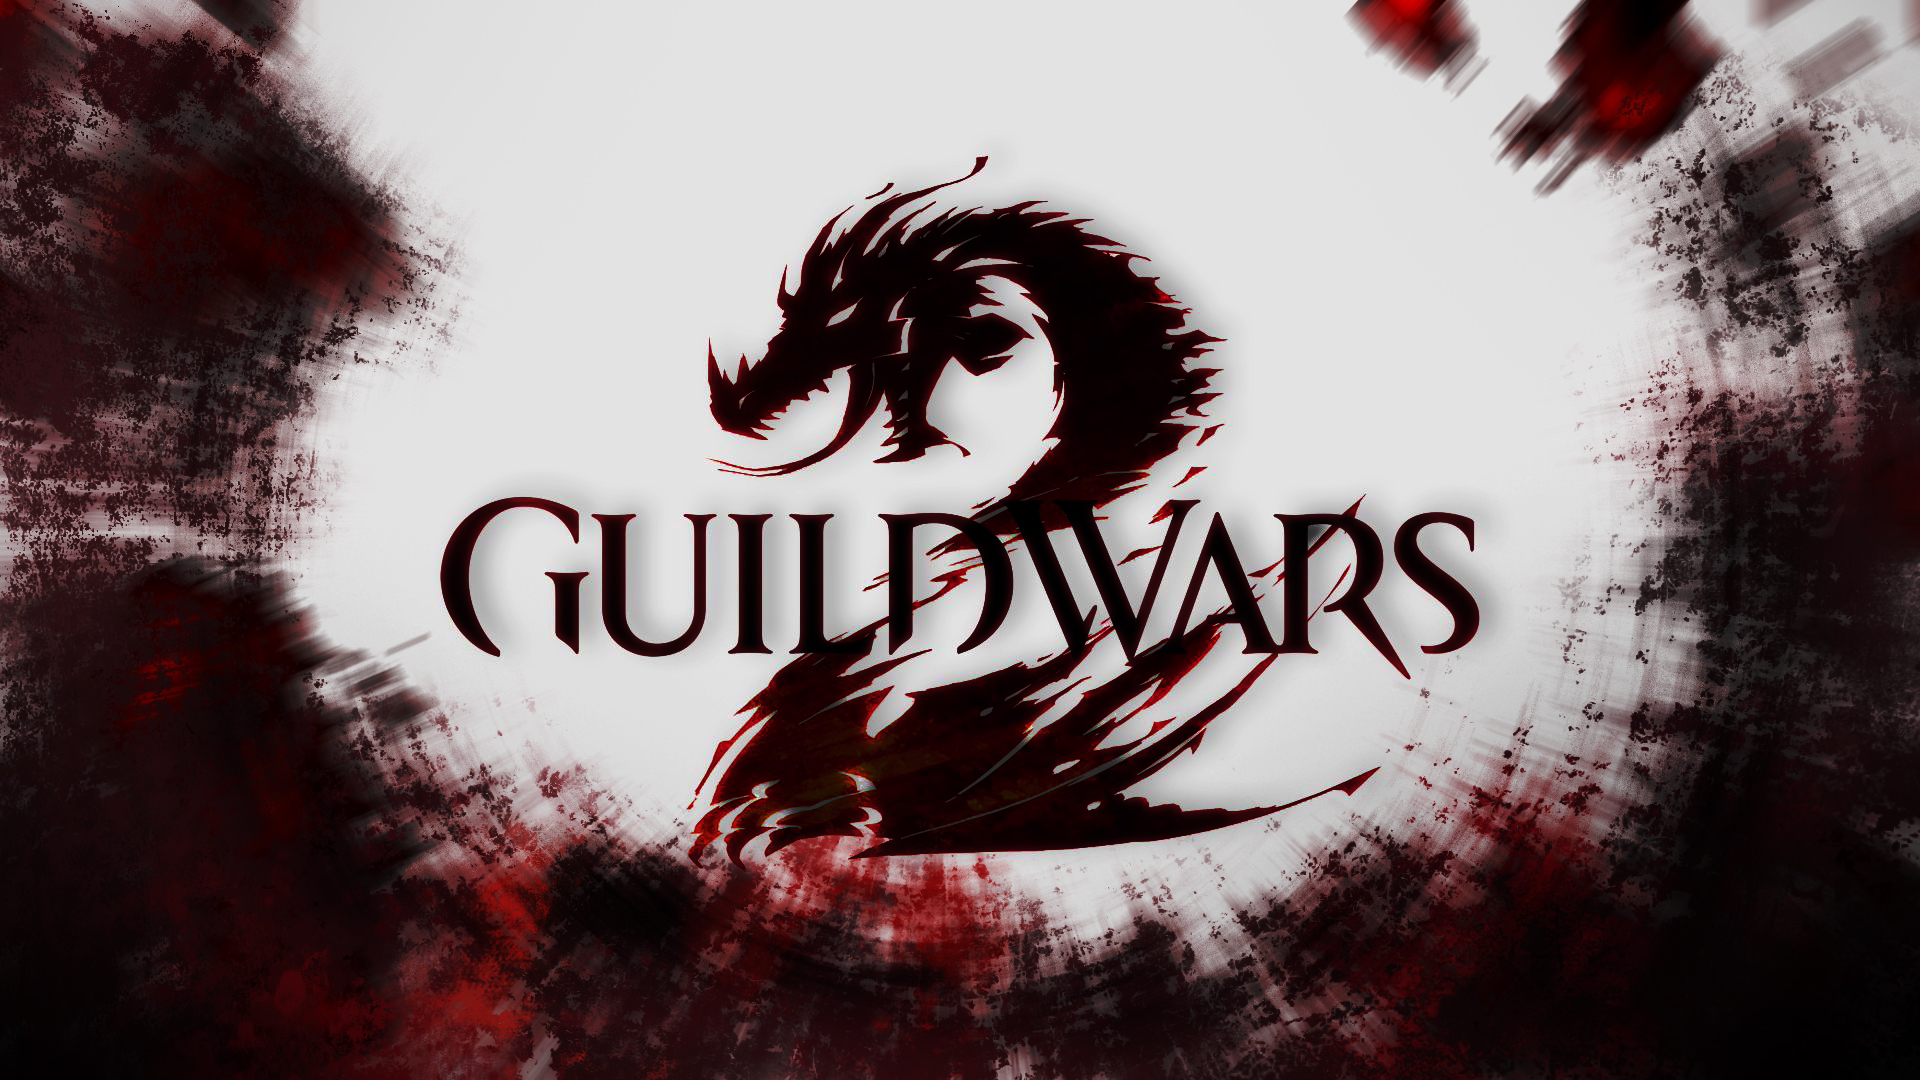 Guild Wars Wallpaper HD On